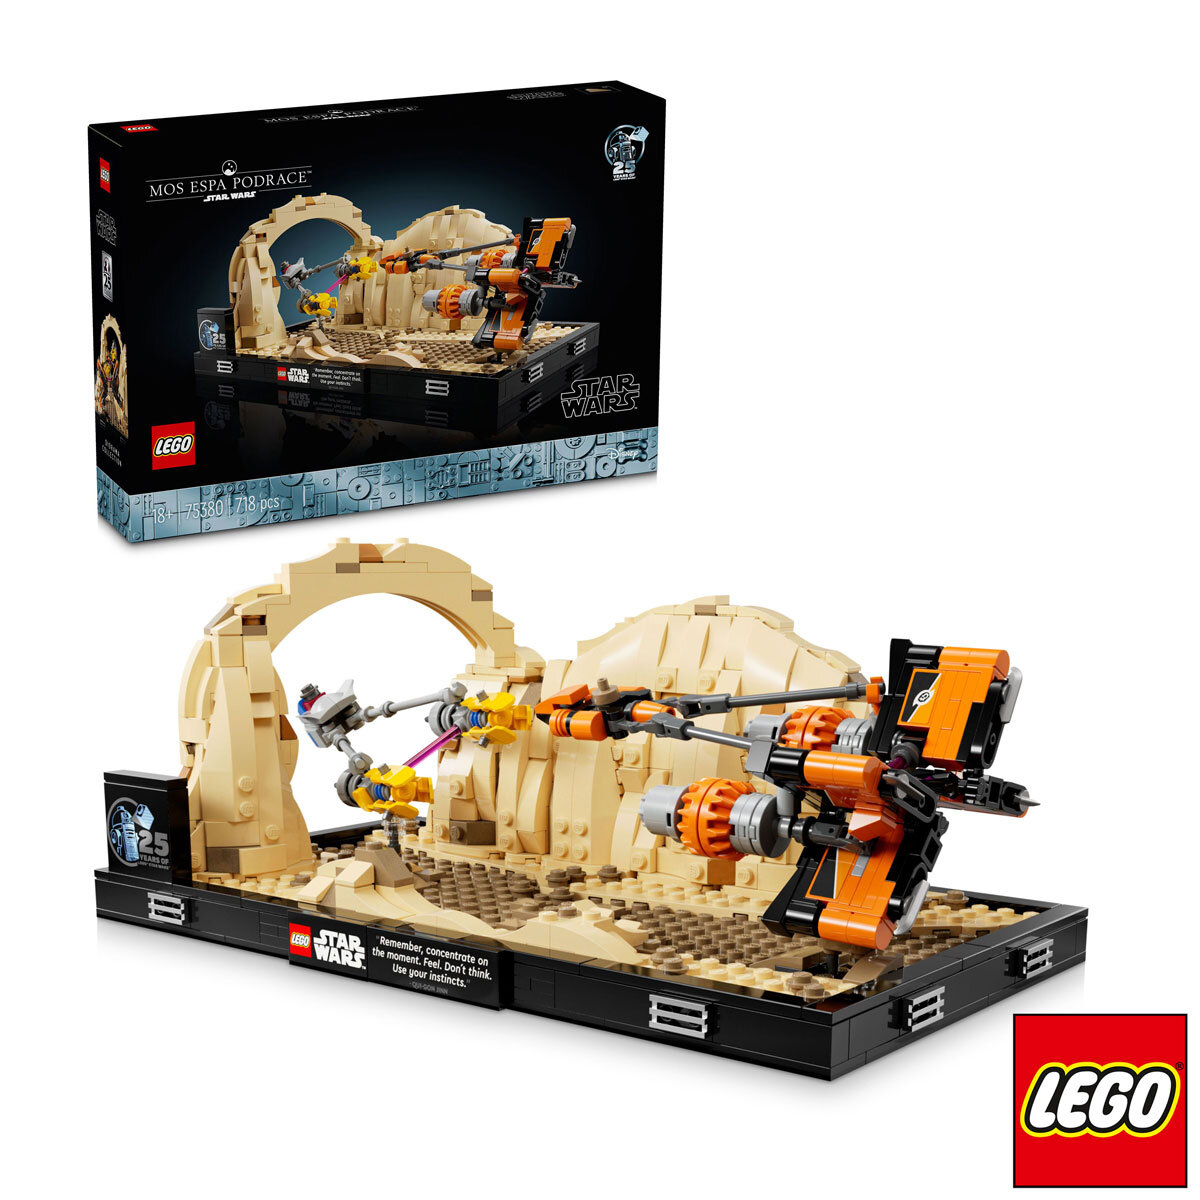 LEGO Star Wars Mos Espa Podrace™ - 75380  (18+ Years)